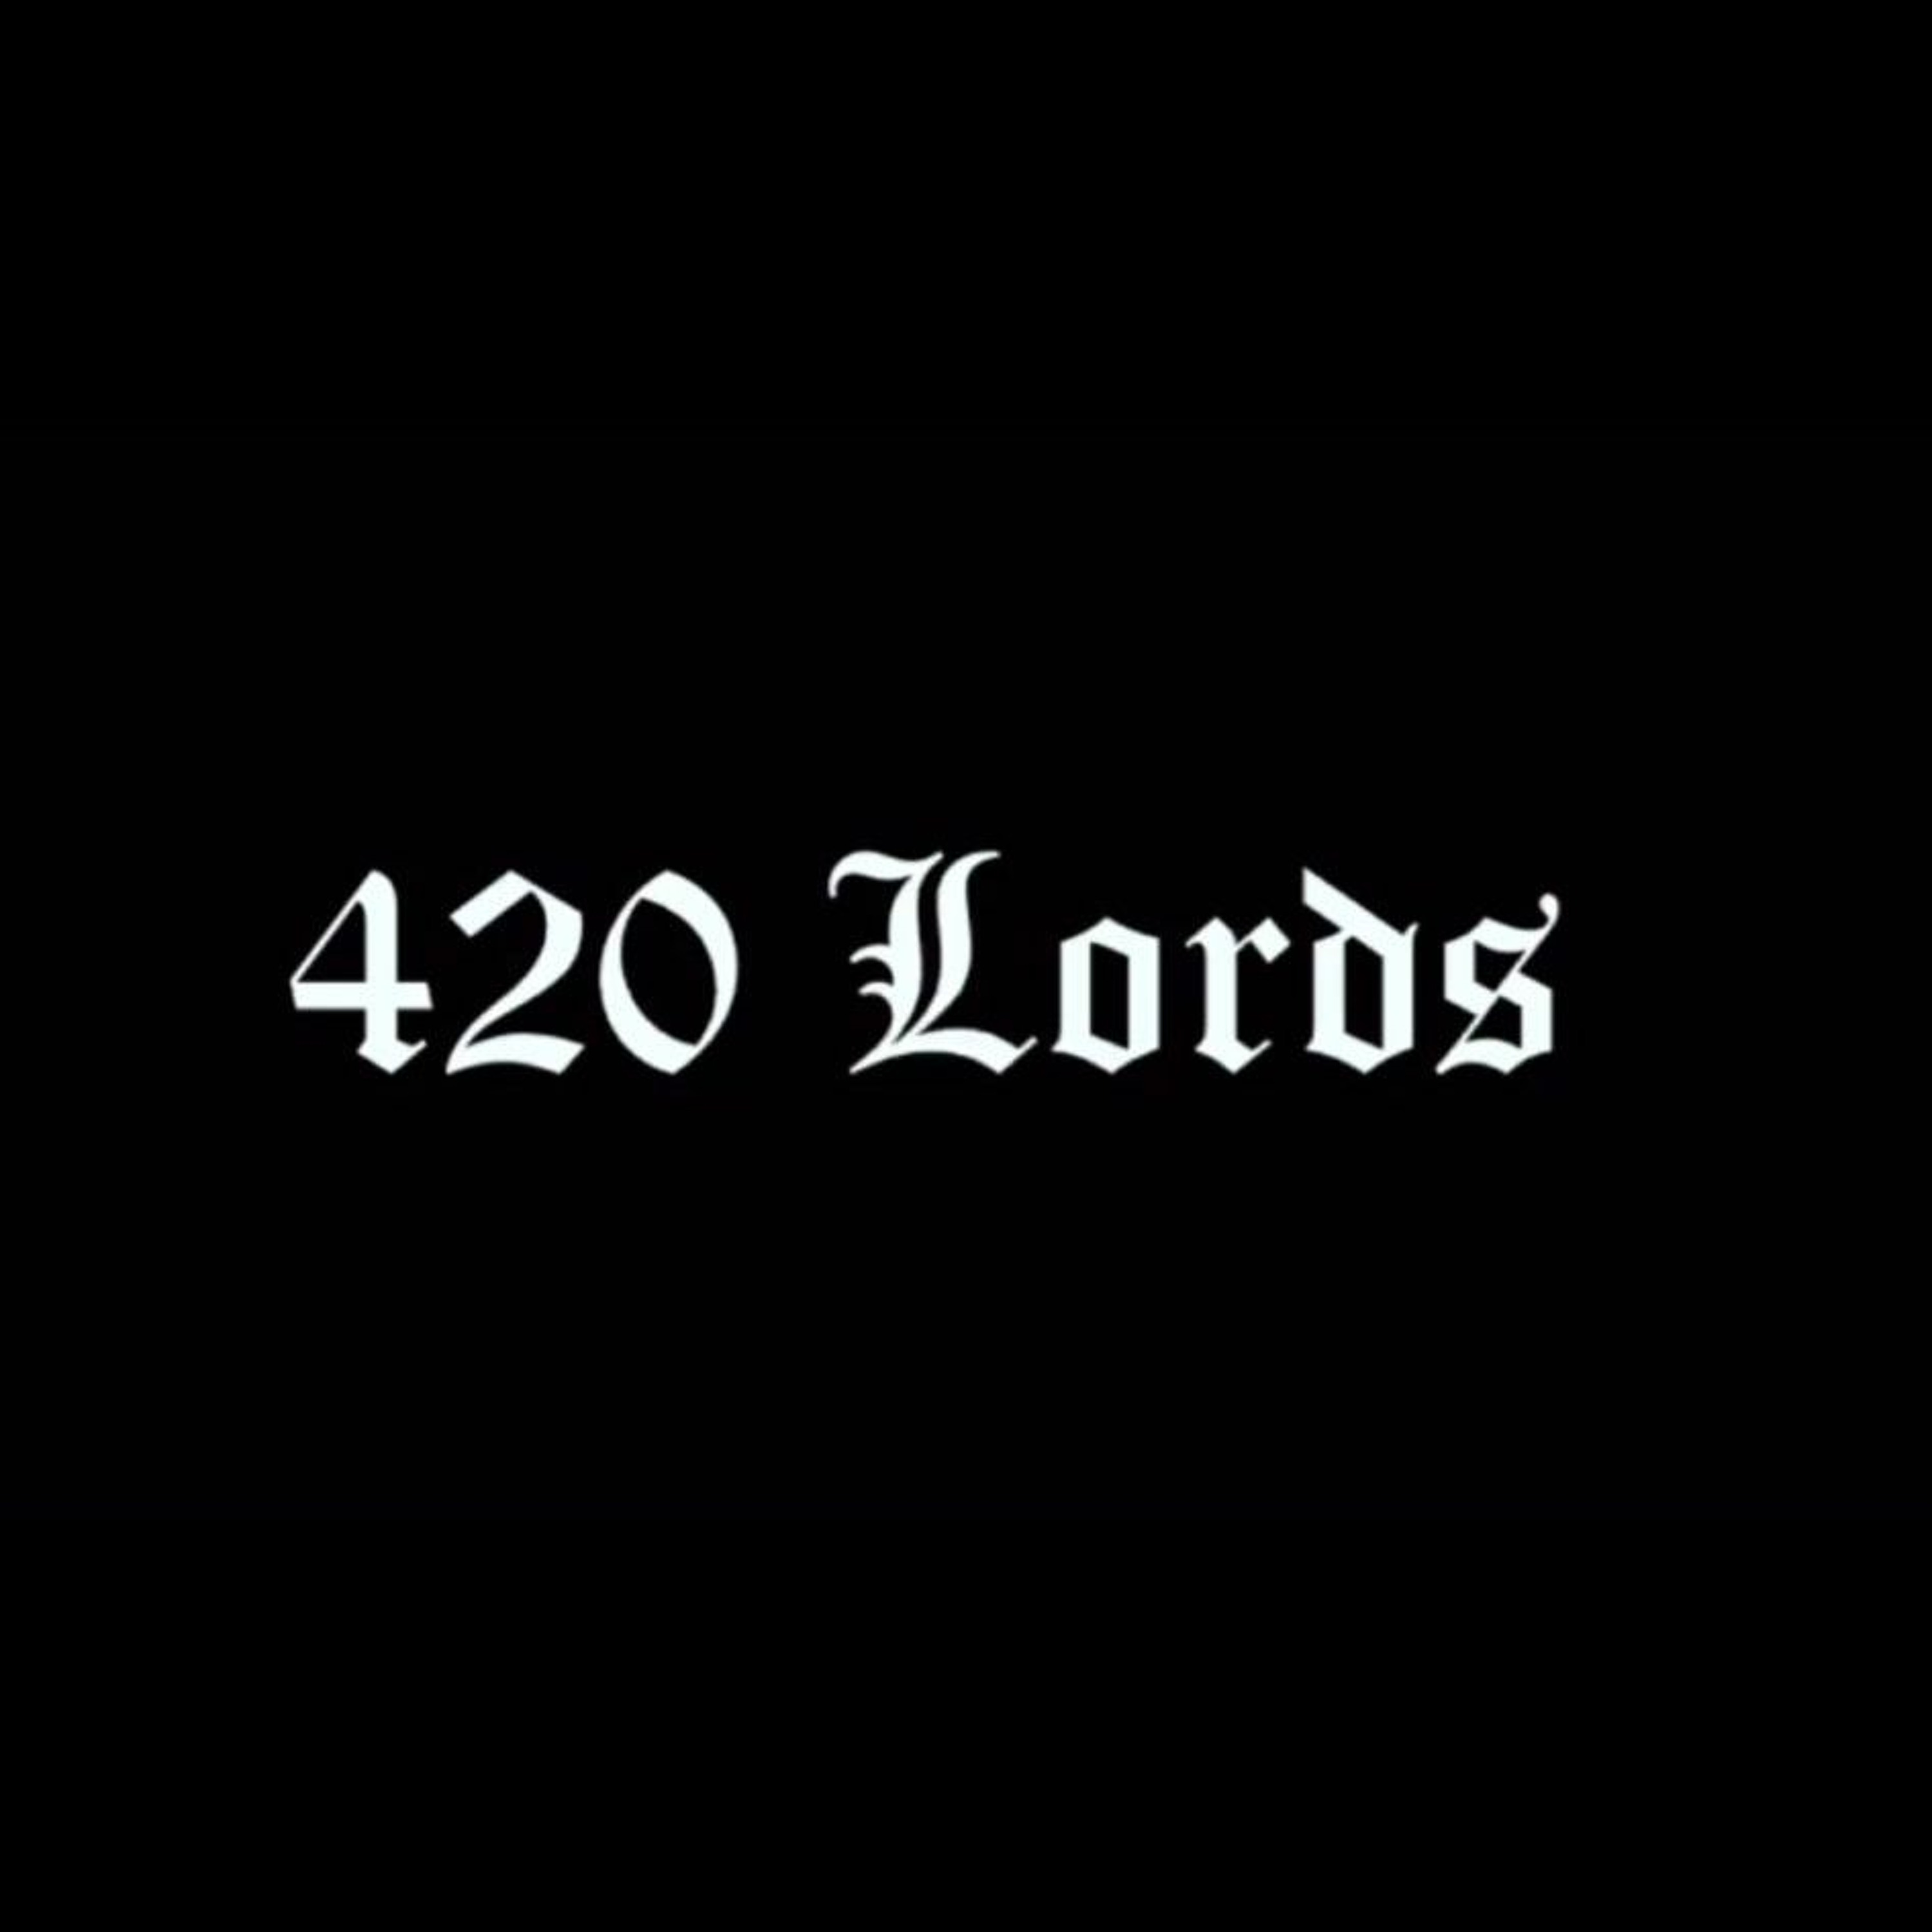 420 Lords: Jujutsu Kaisen 0 Movie Review